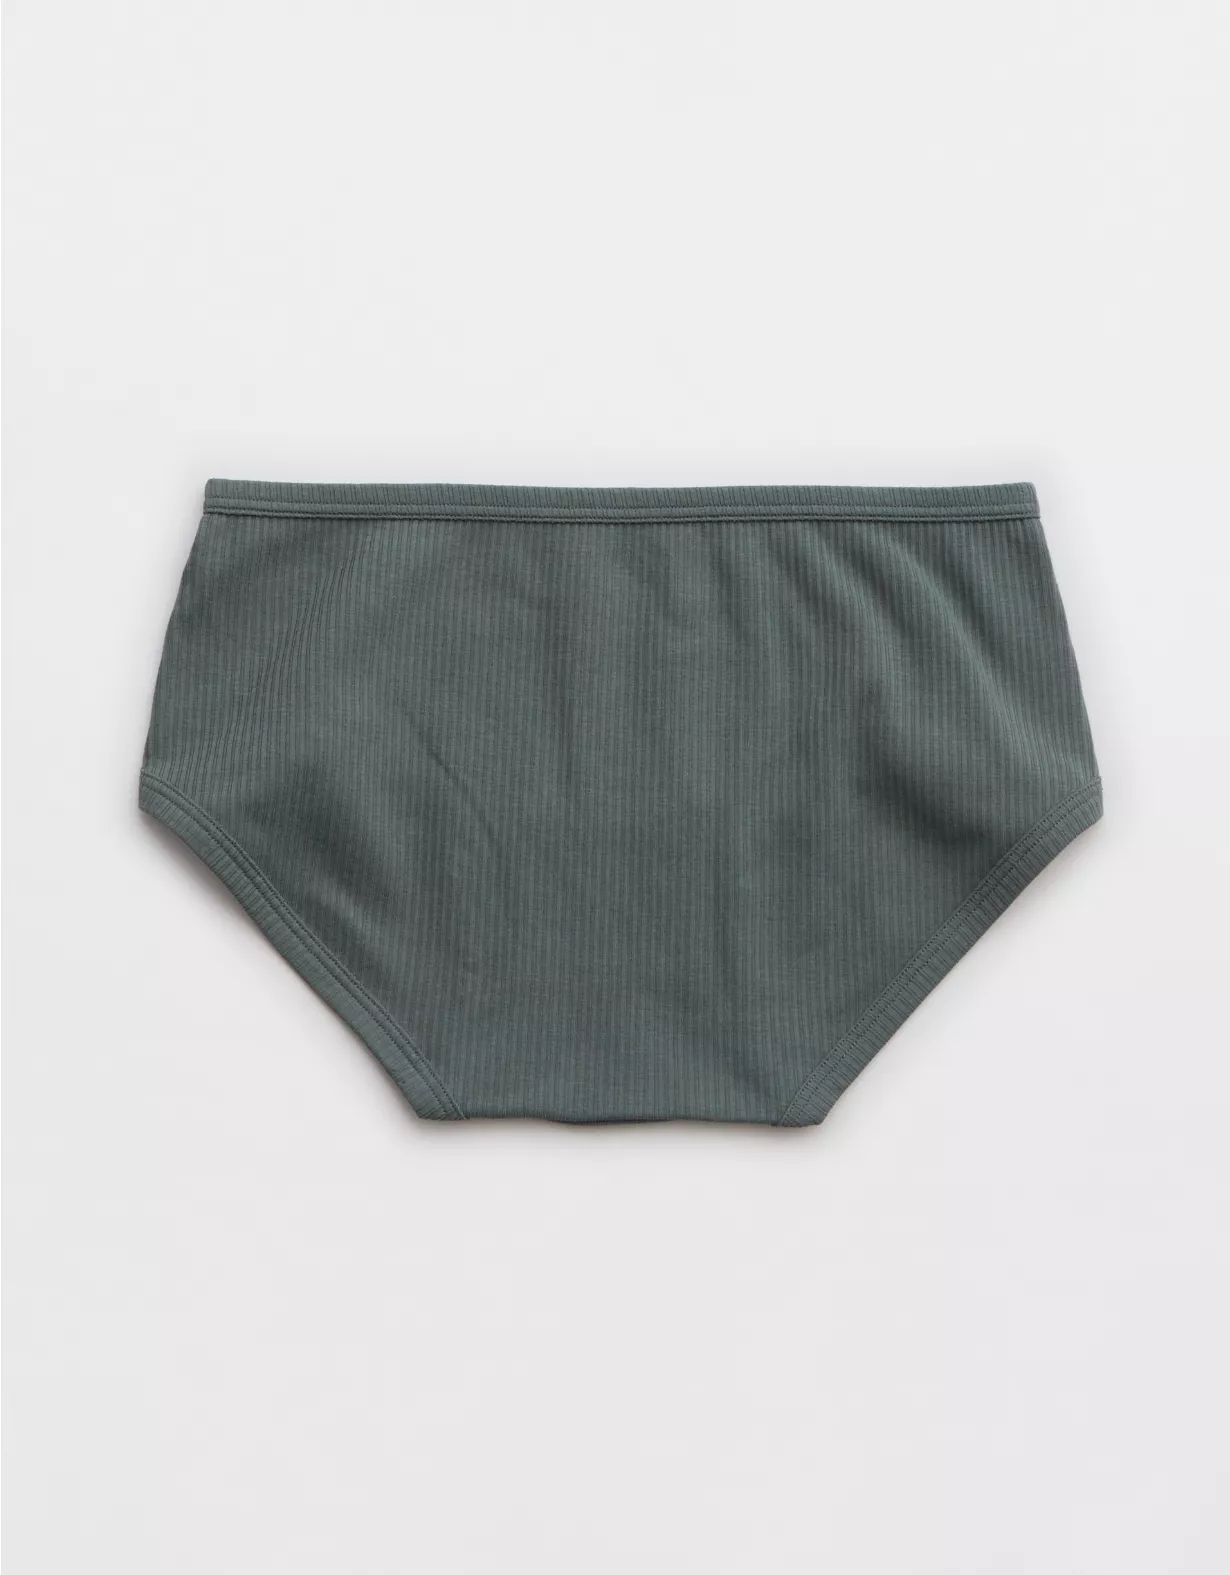 Aerie Ribbed Cotton Boybrief Underwear